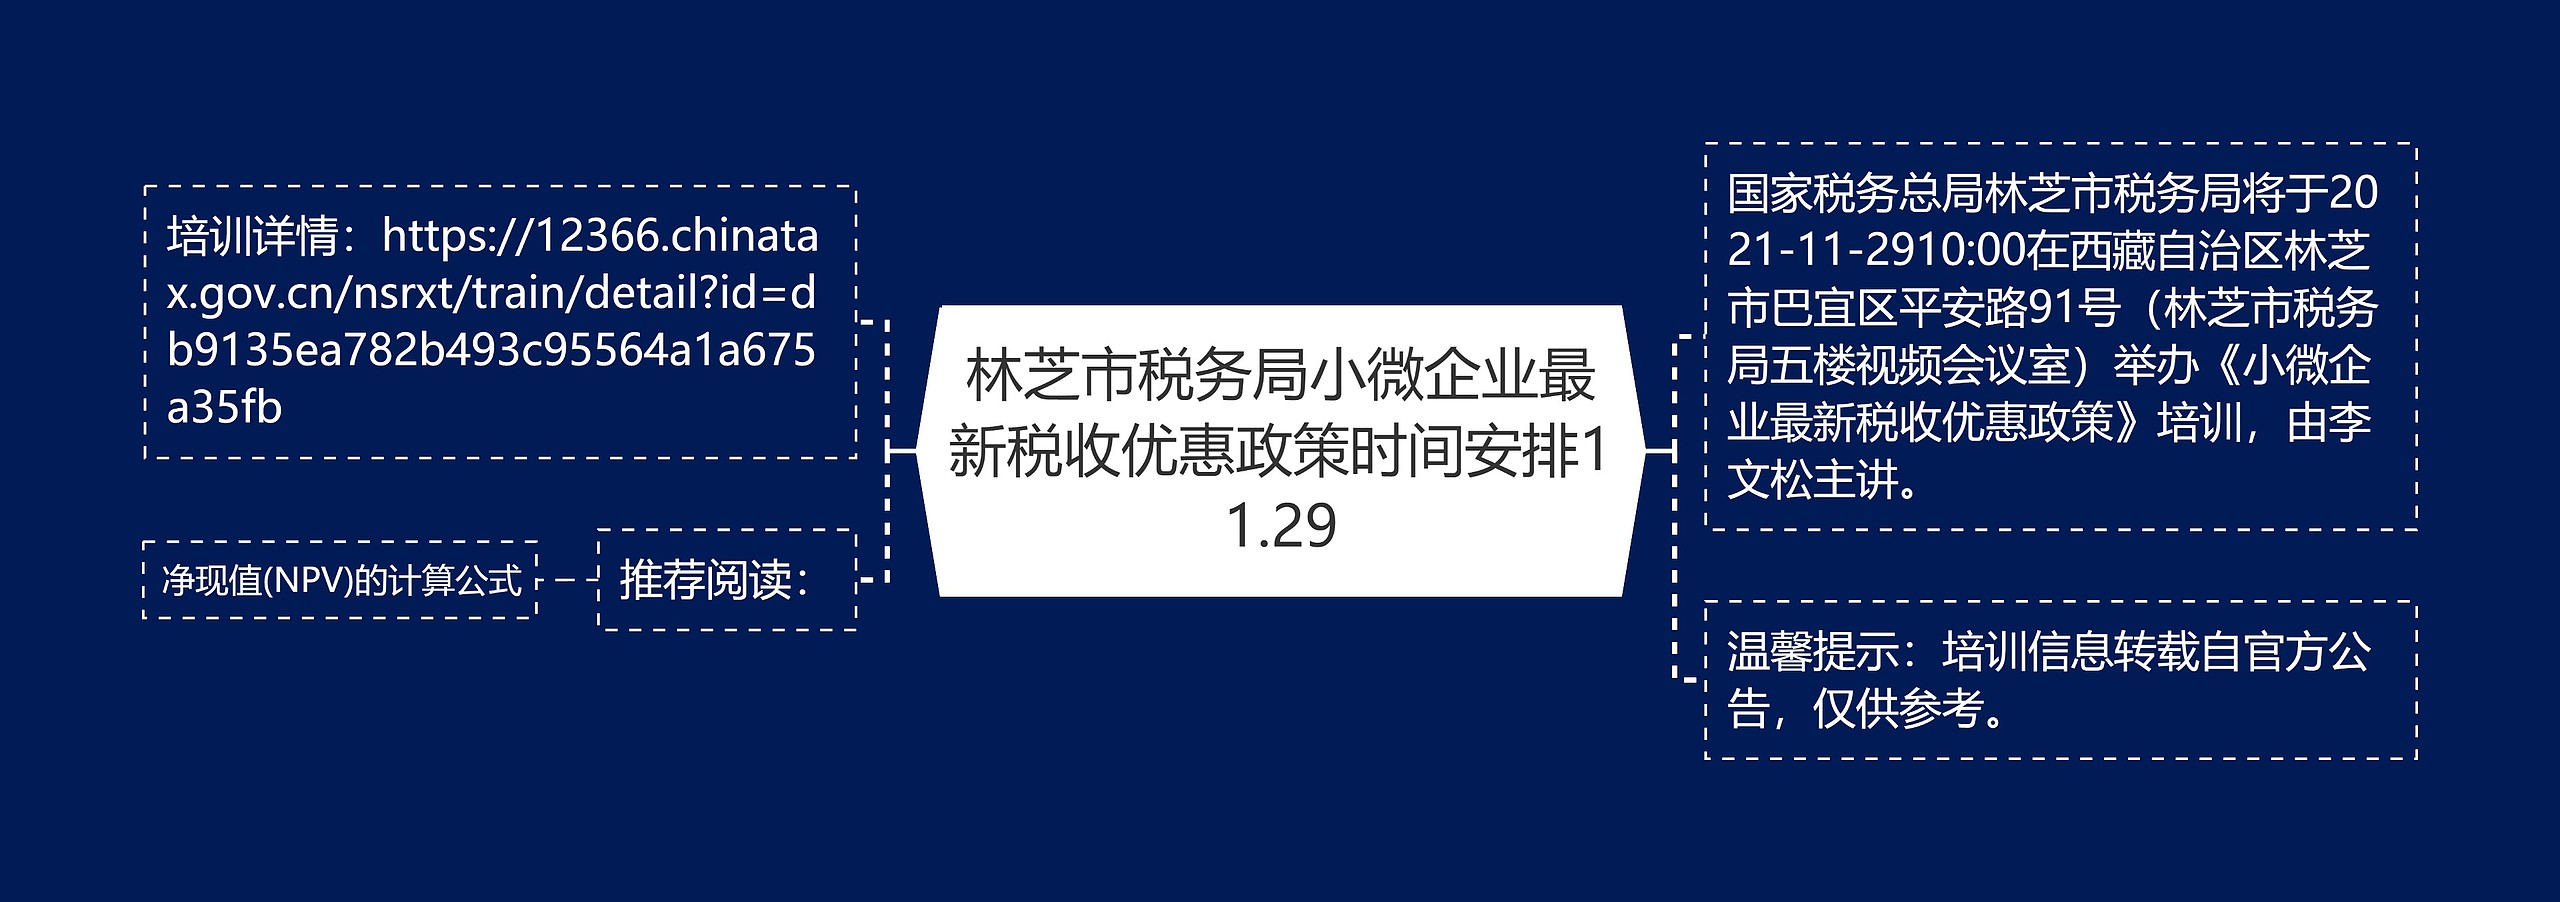 林芝市税务局小微企业最新税收优惠政策时间安排11.29